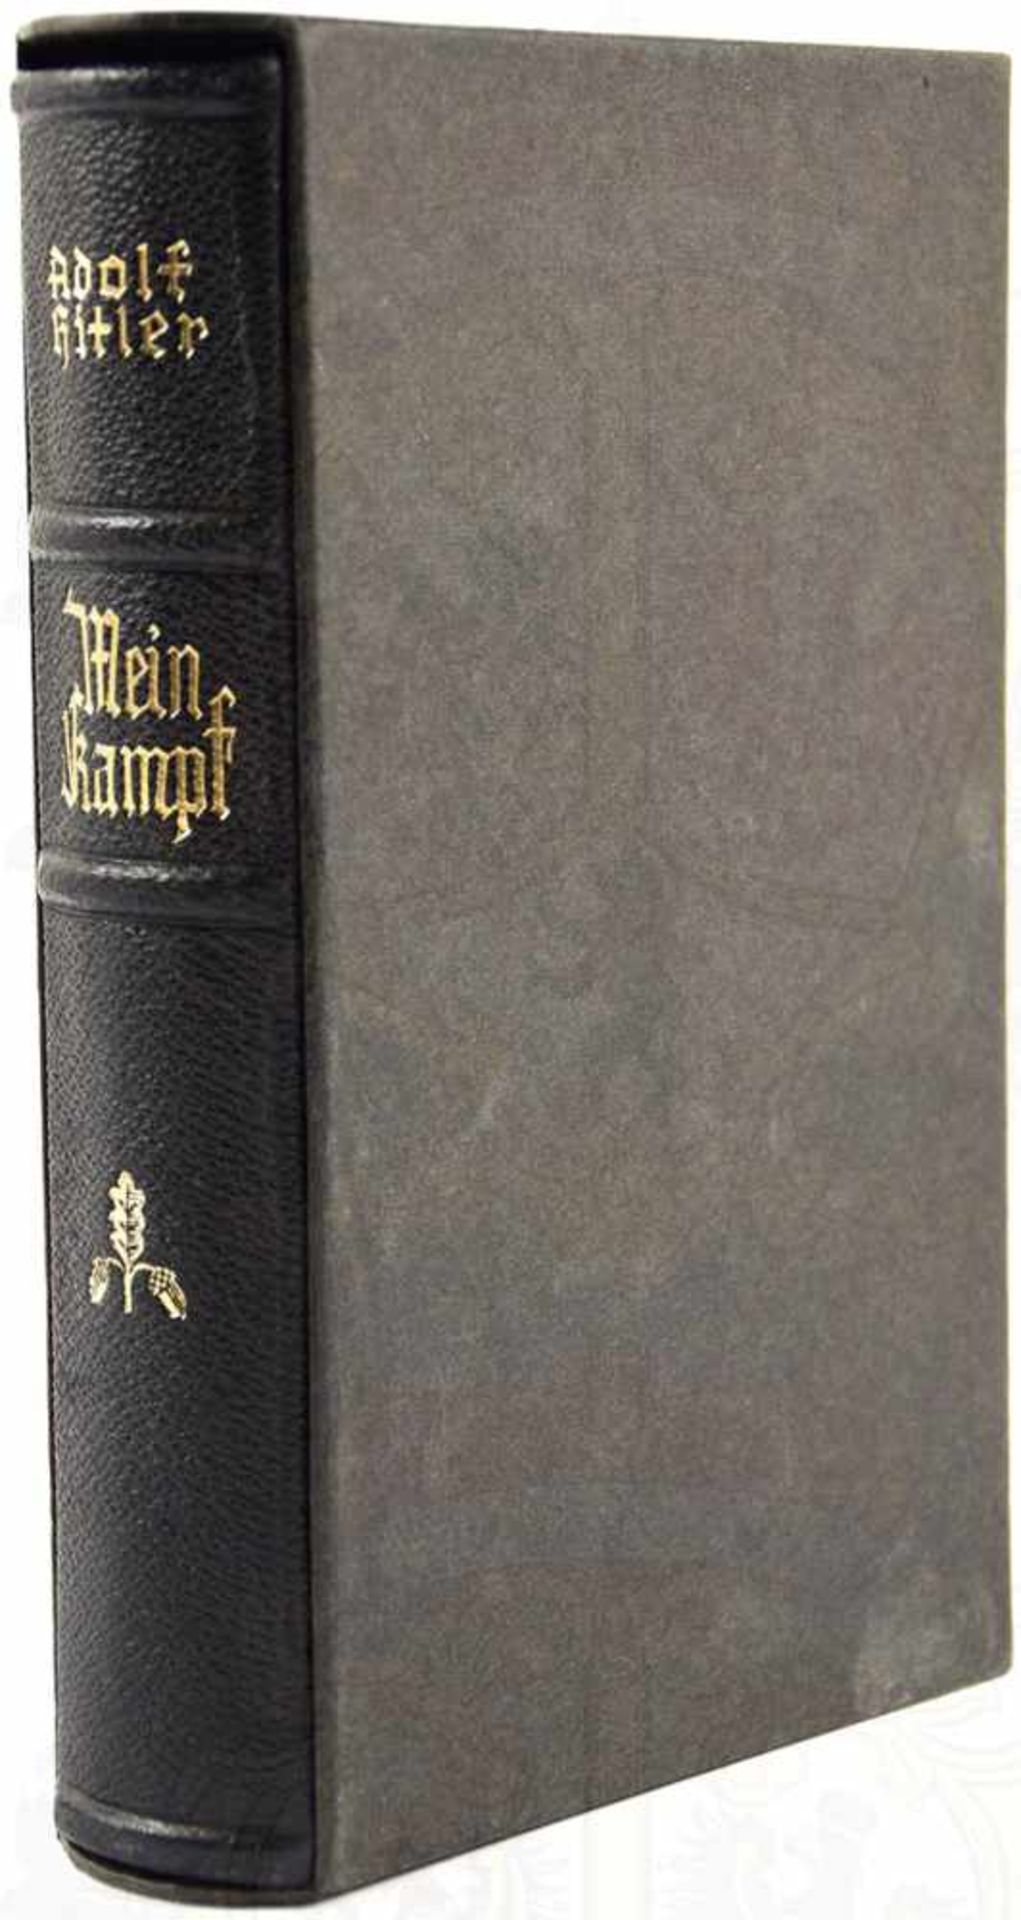 MEIN KAMPF, Adolf Hitler, Hochzeitsausgabe, Eher Verlag, 1938, Porträtbild, 781 S., goldgepr.